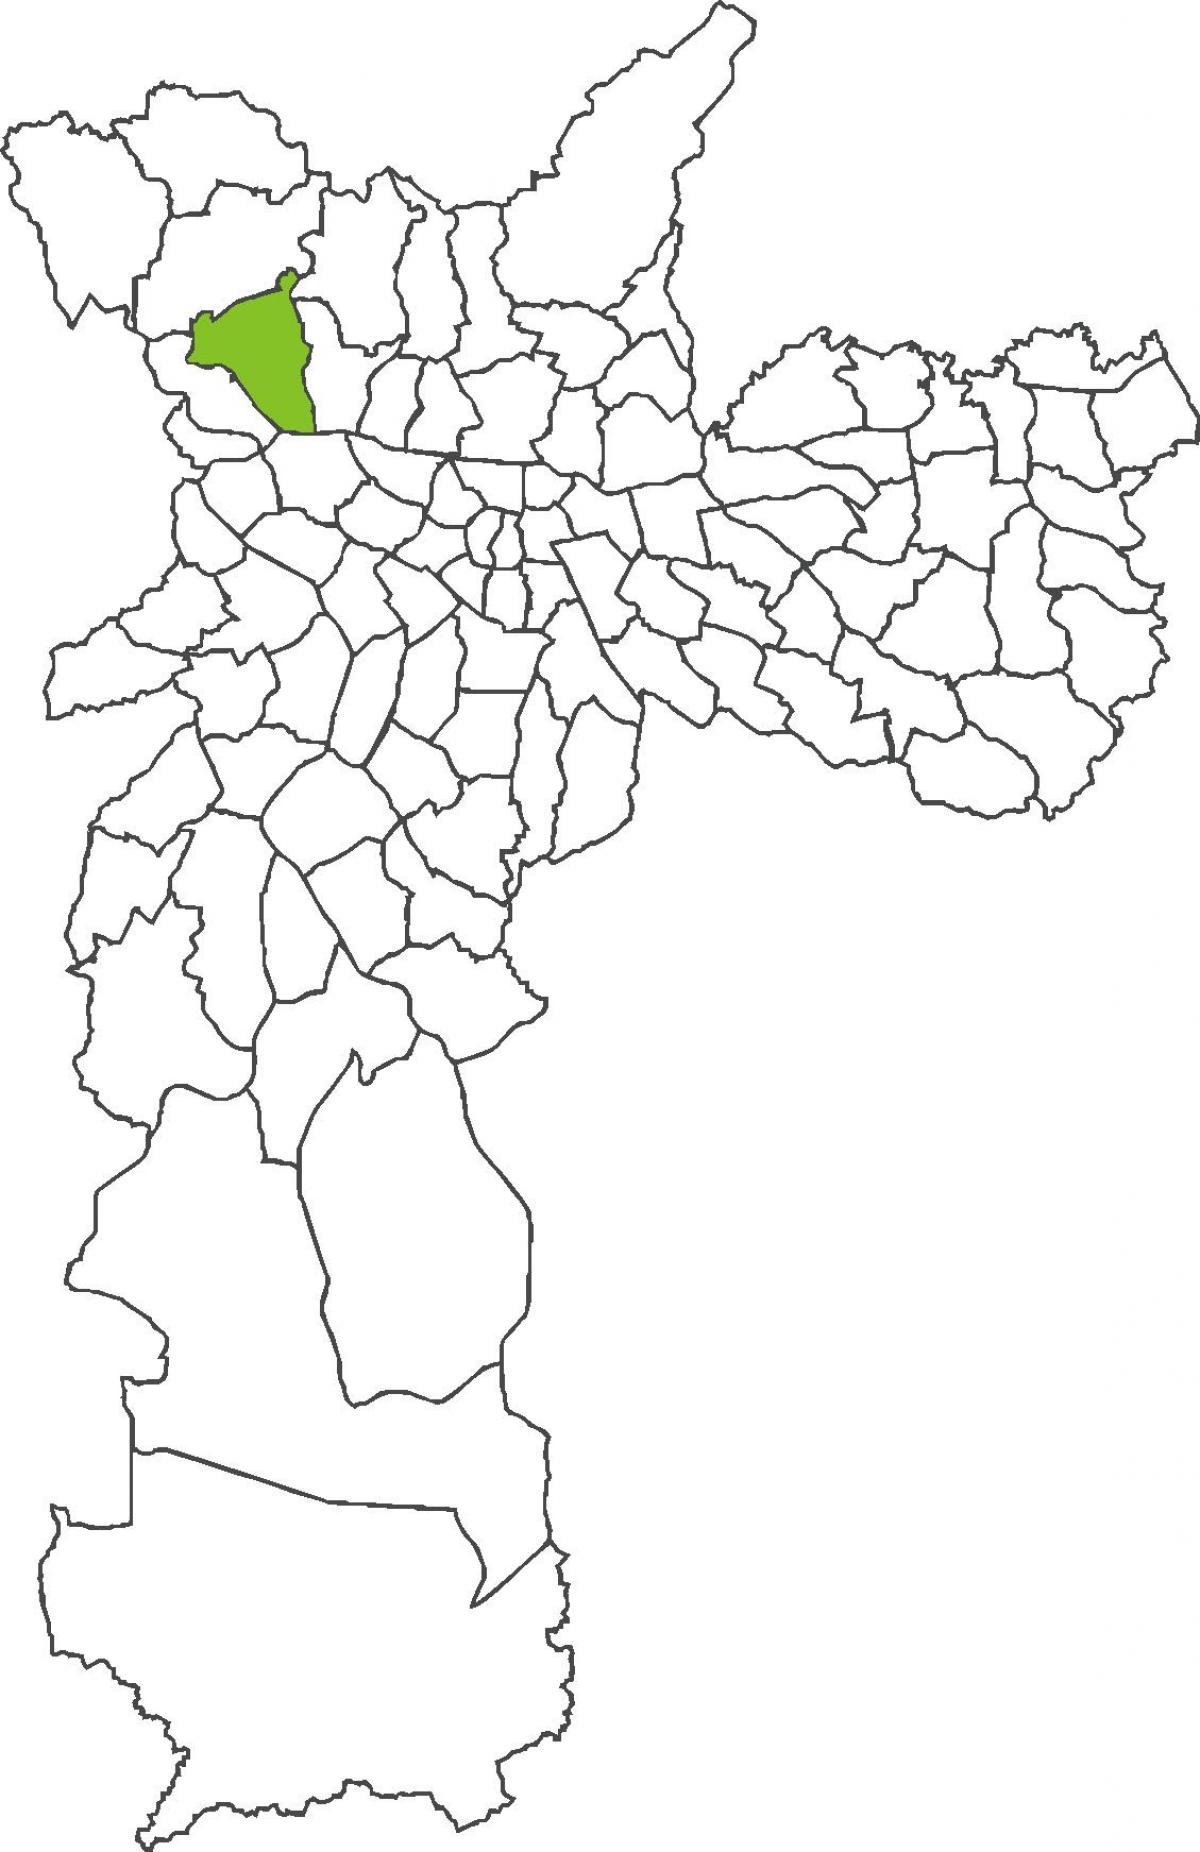 মানচিত্র Pirituba জেলা